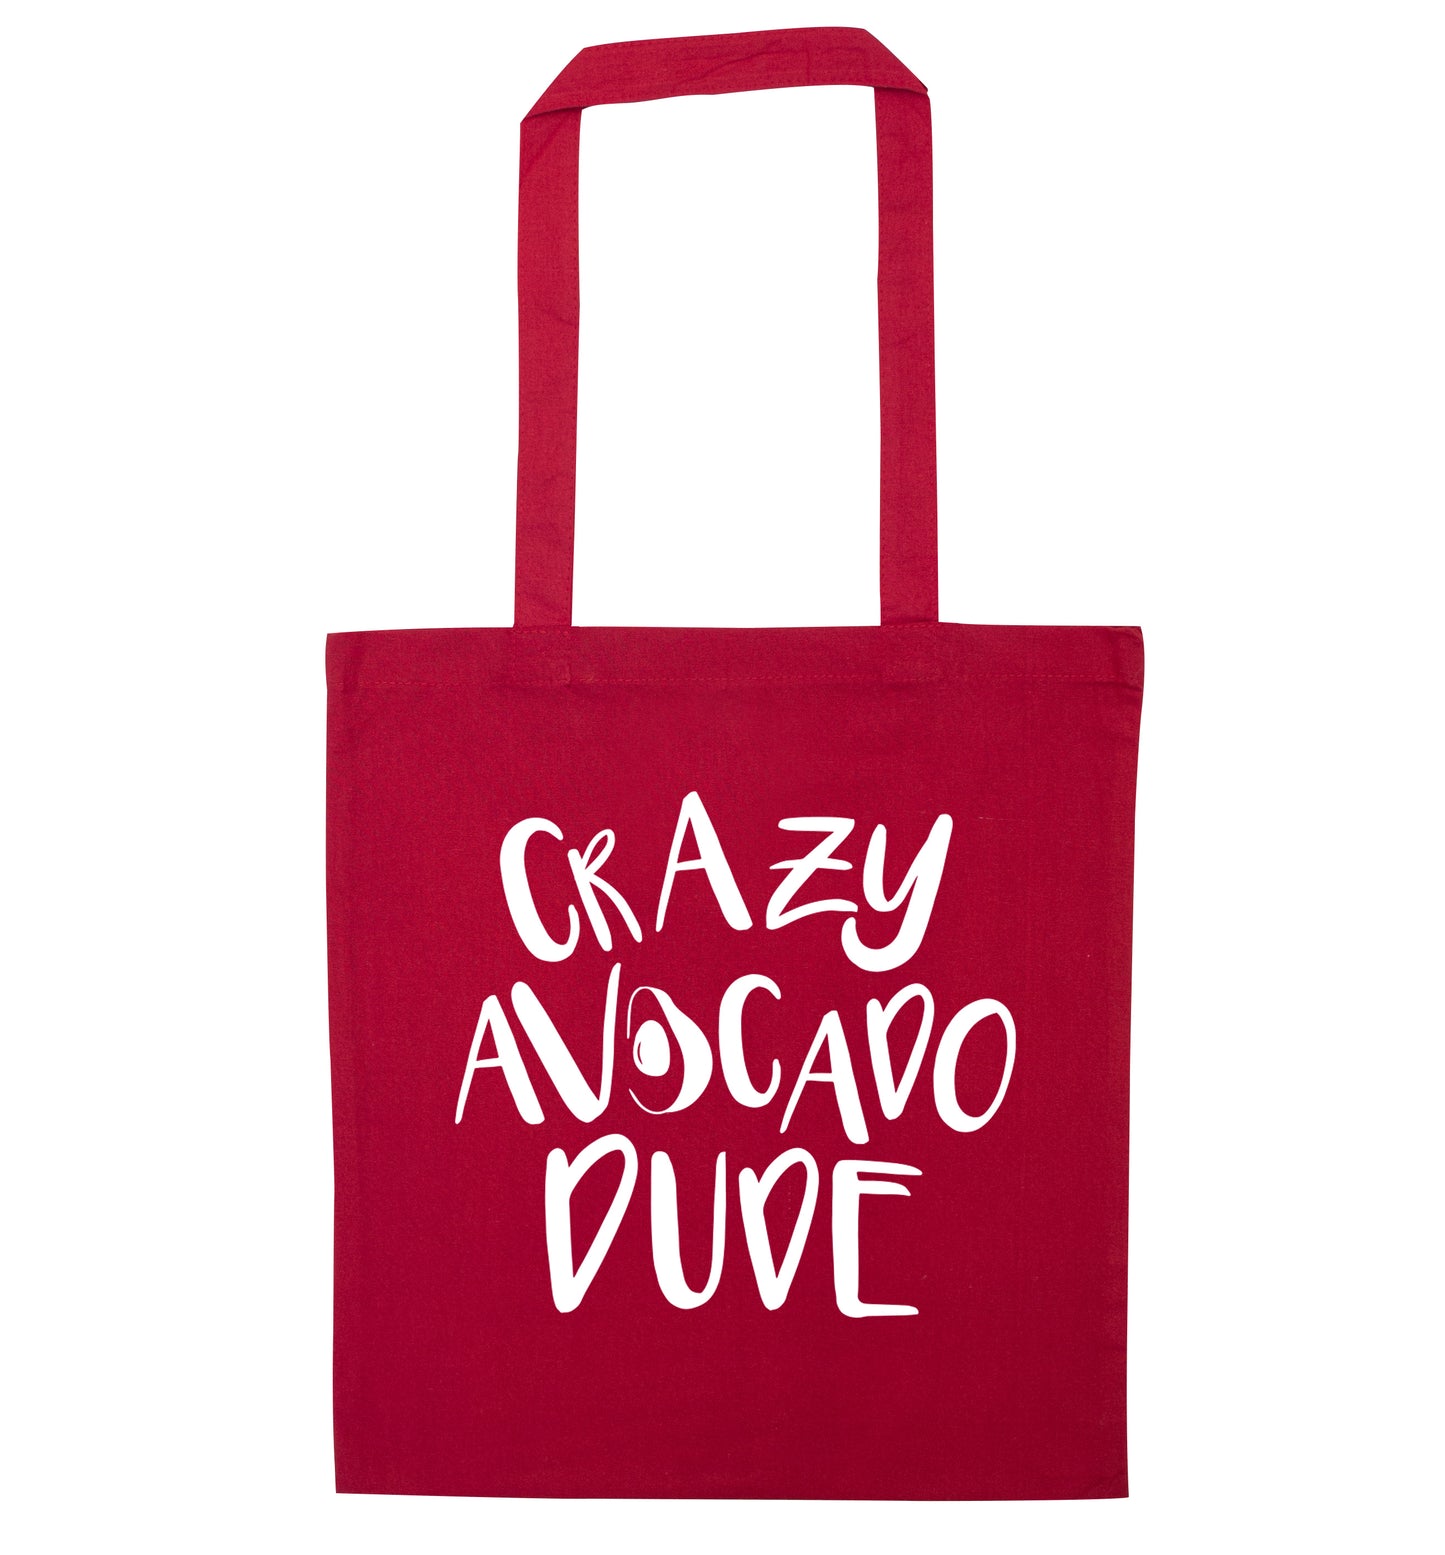 Crazy avocado dude red tote bag